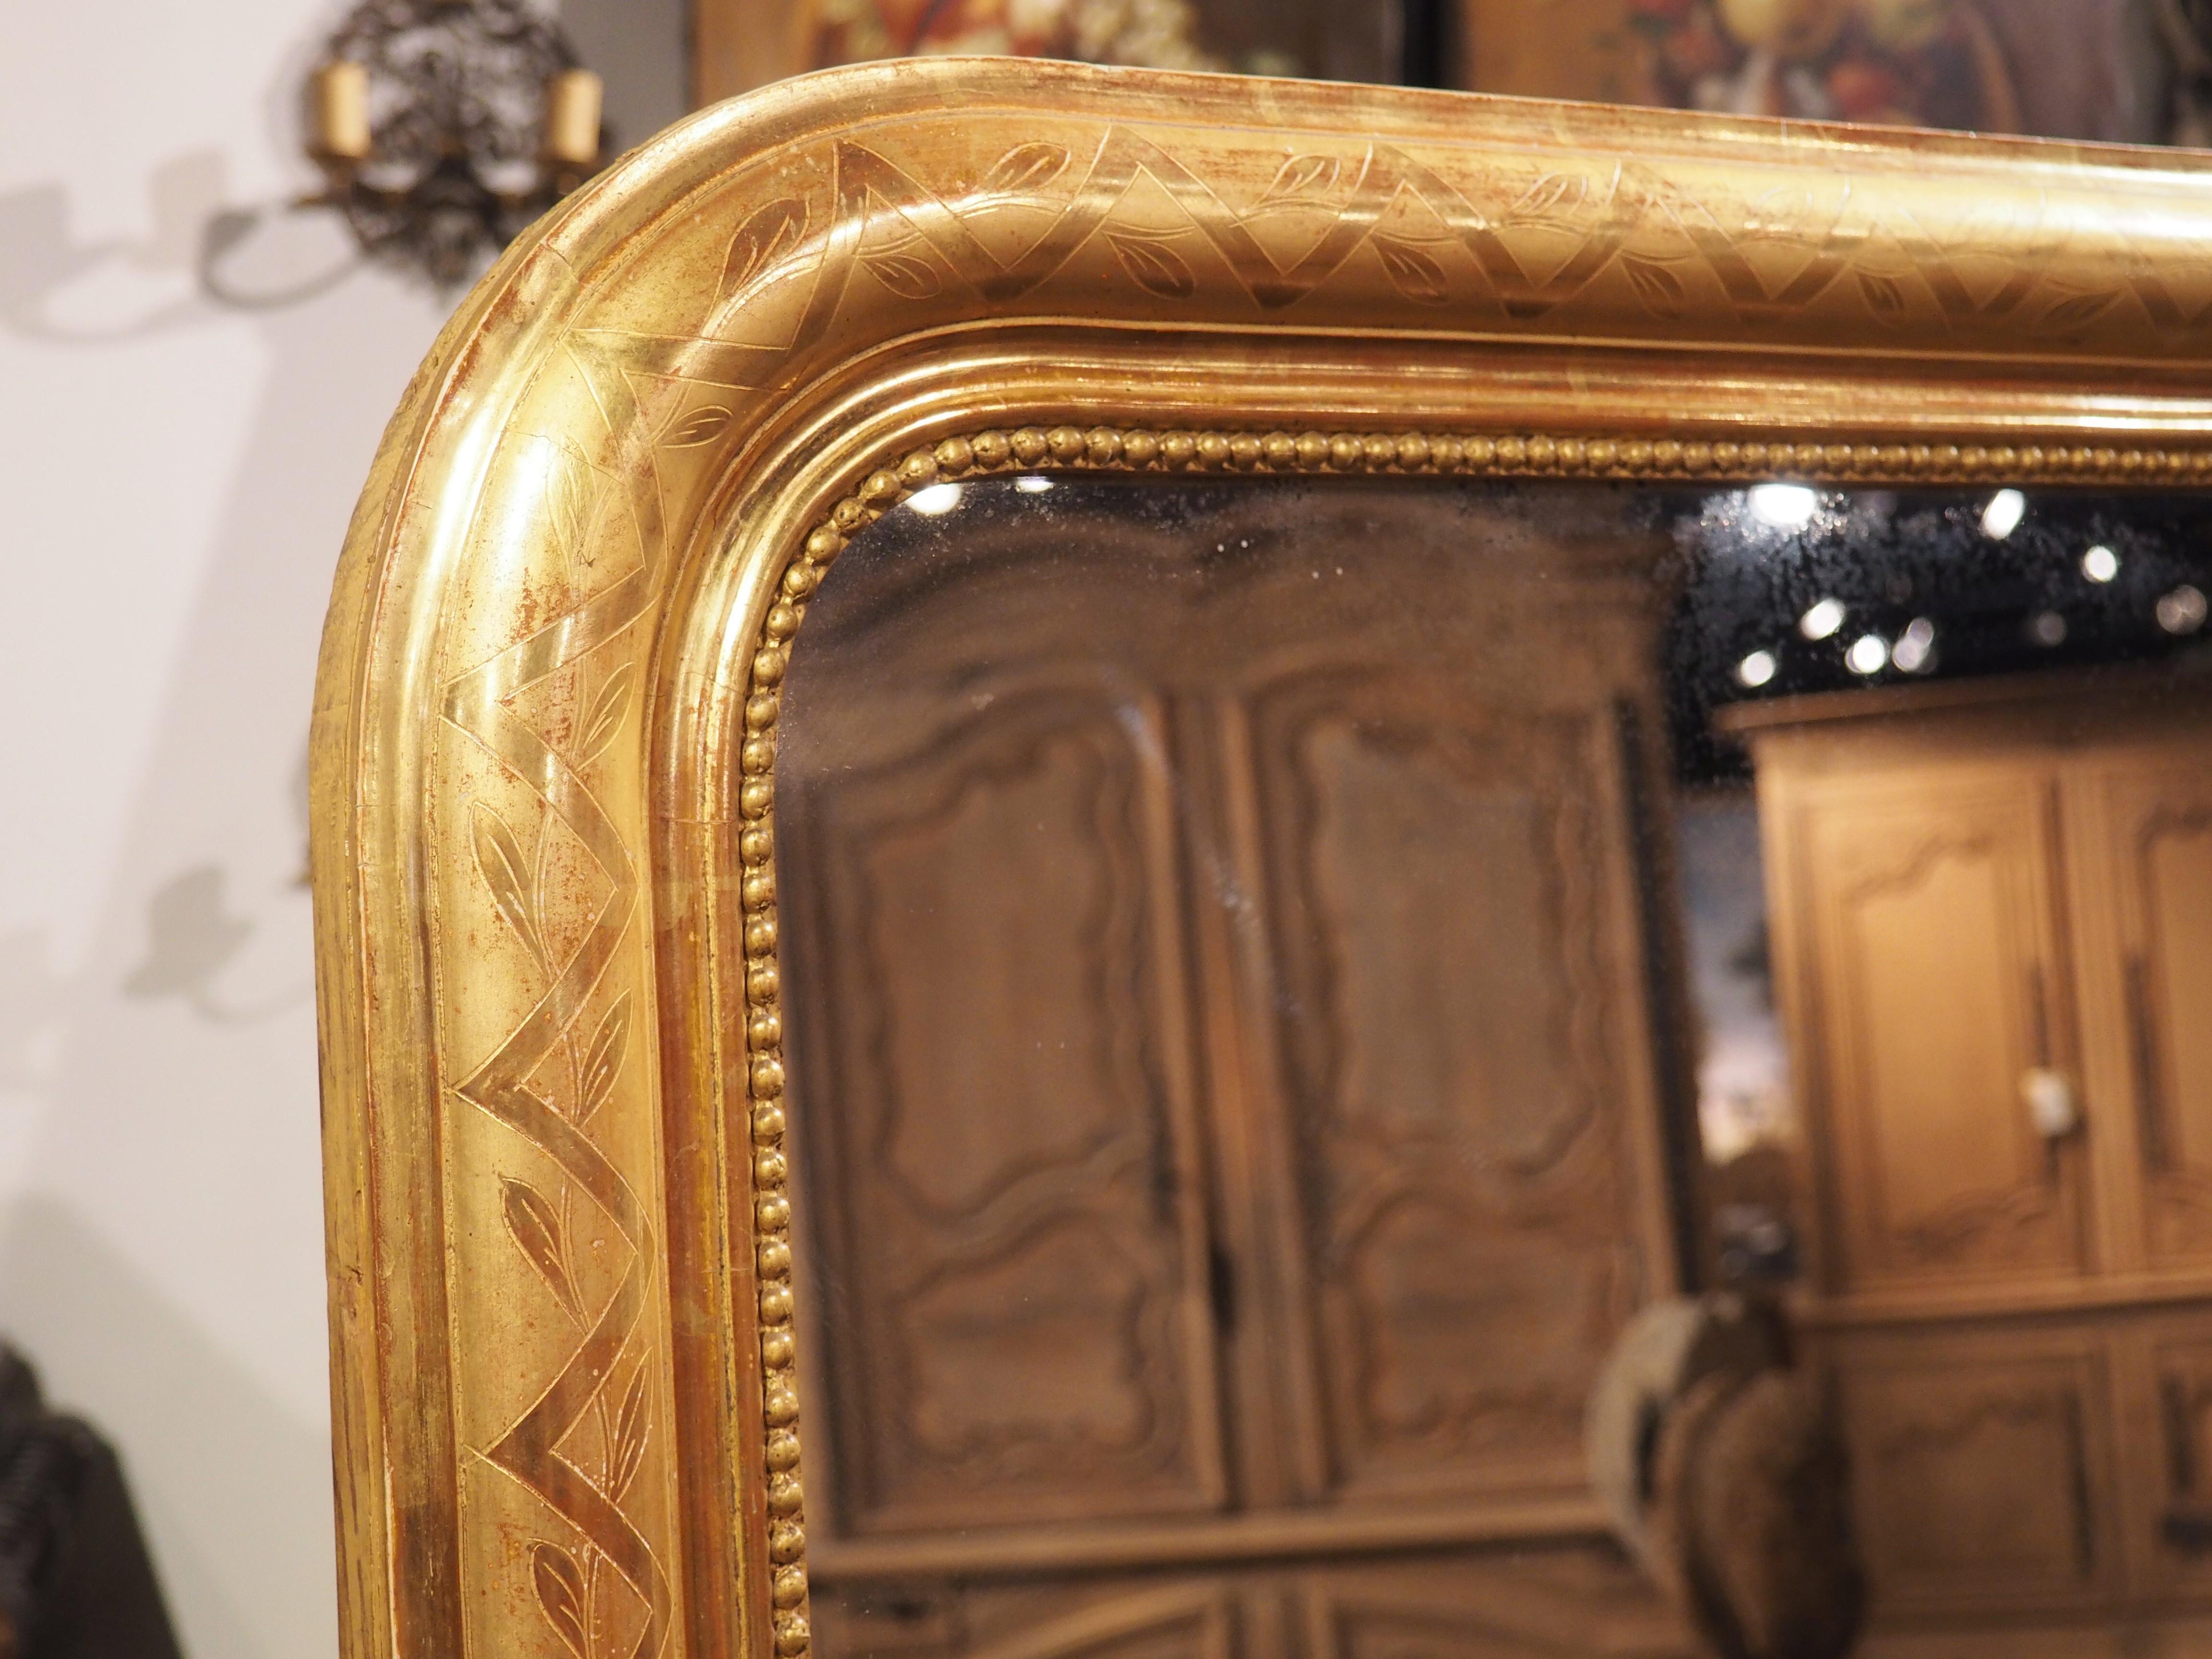 Die Spiegel von Louis Philippe sind bekannt für ihre schlichte Eleganz und ihre subtilen Verzierungen. Sie sind immer sehr gefragt, denn ihre klaren Linien passen zu fast jedem Einrichtungsstil. Unser hoher Spiegel aus Blattgold aus Frankreich